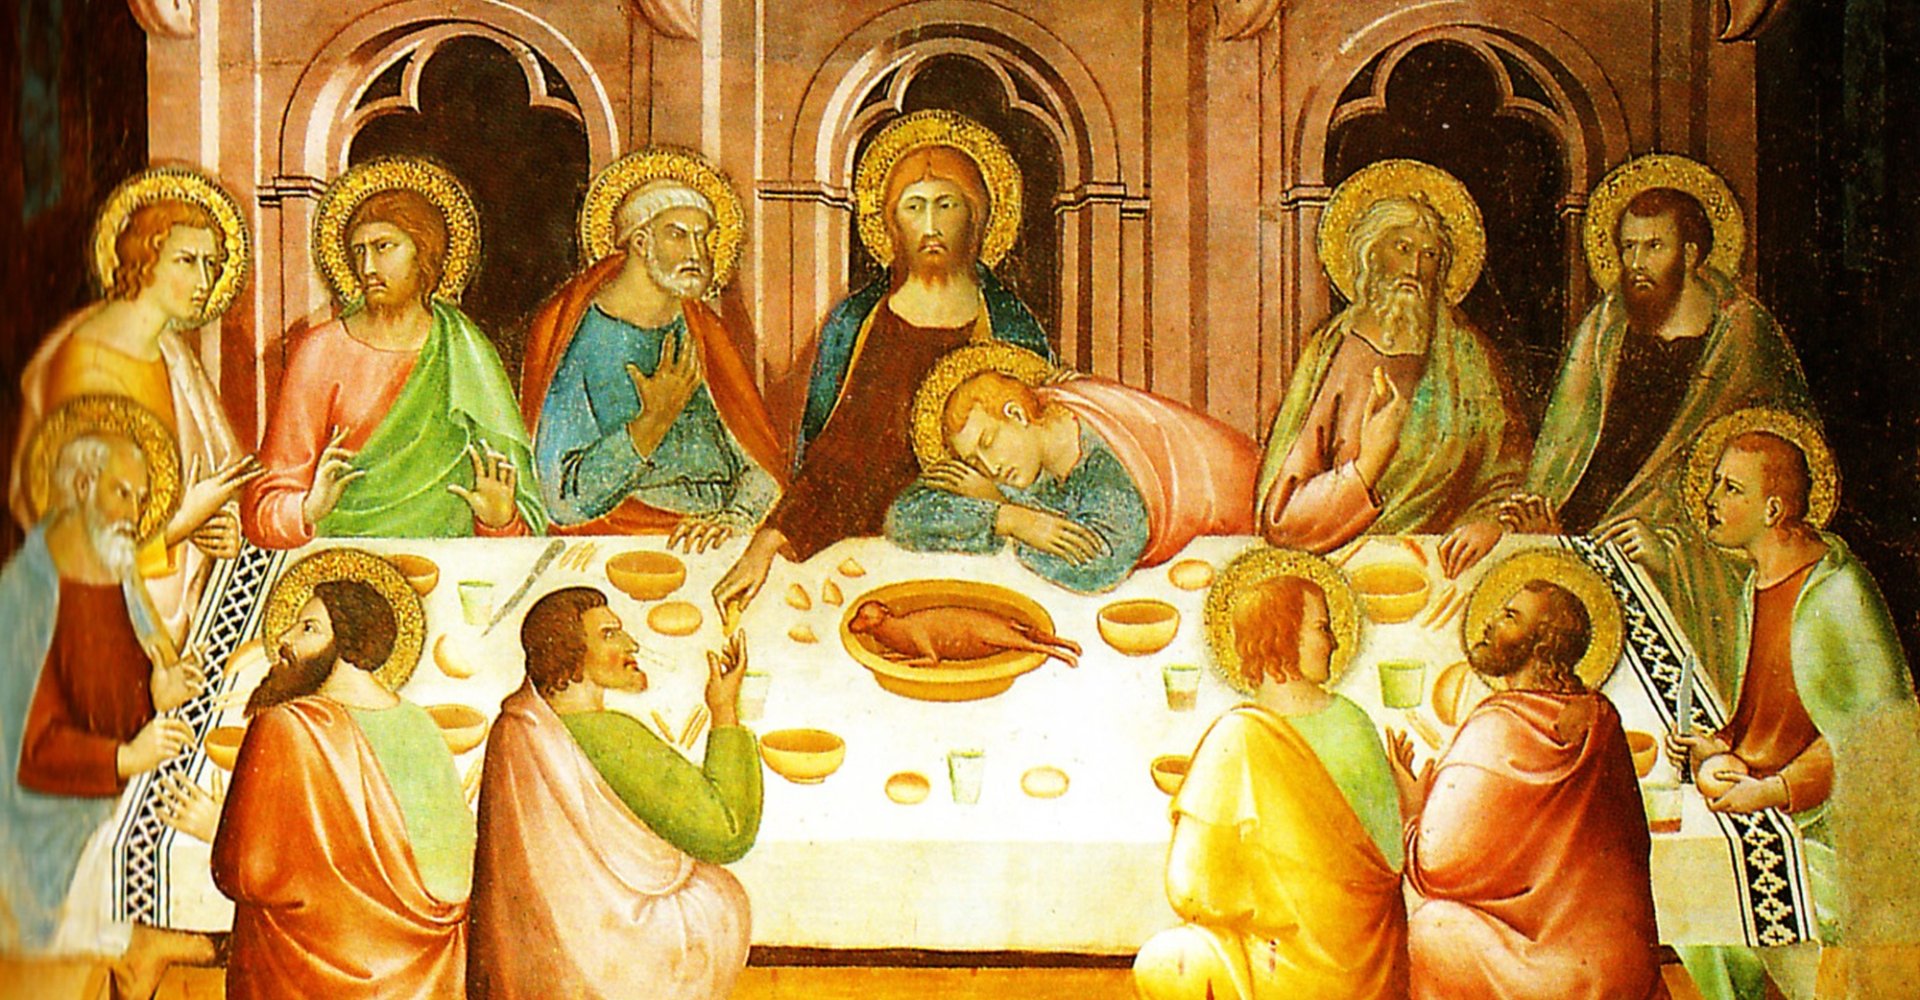 Last Supper - Collegiate Church of San Gimignano